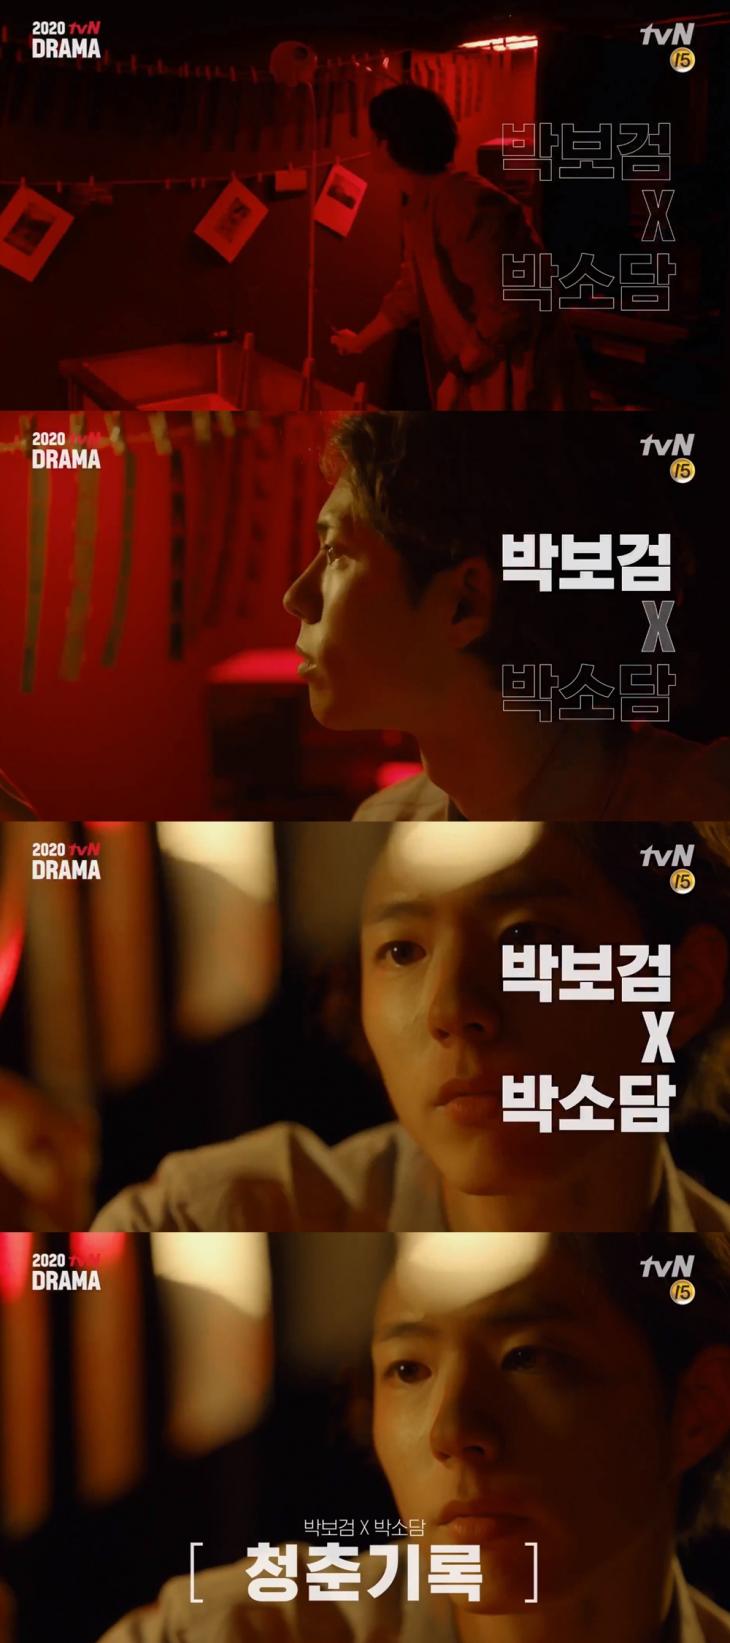 tvN 드라마 공식 유튜브